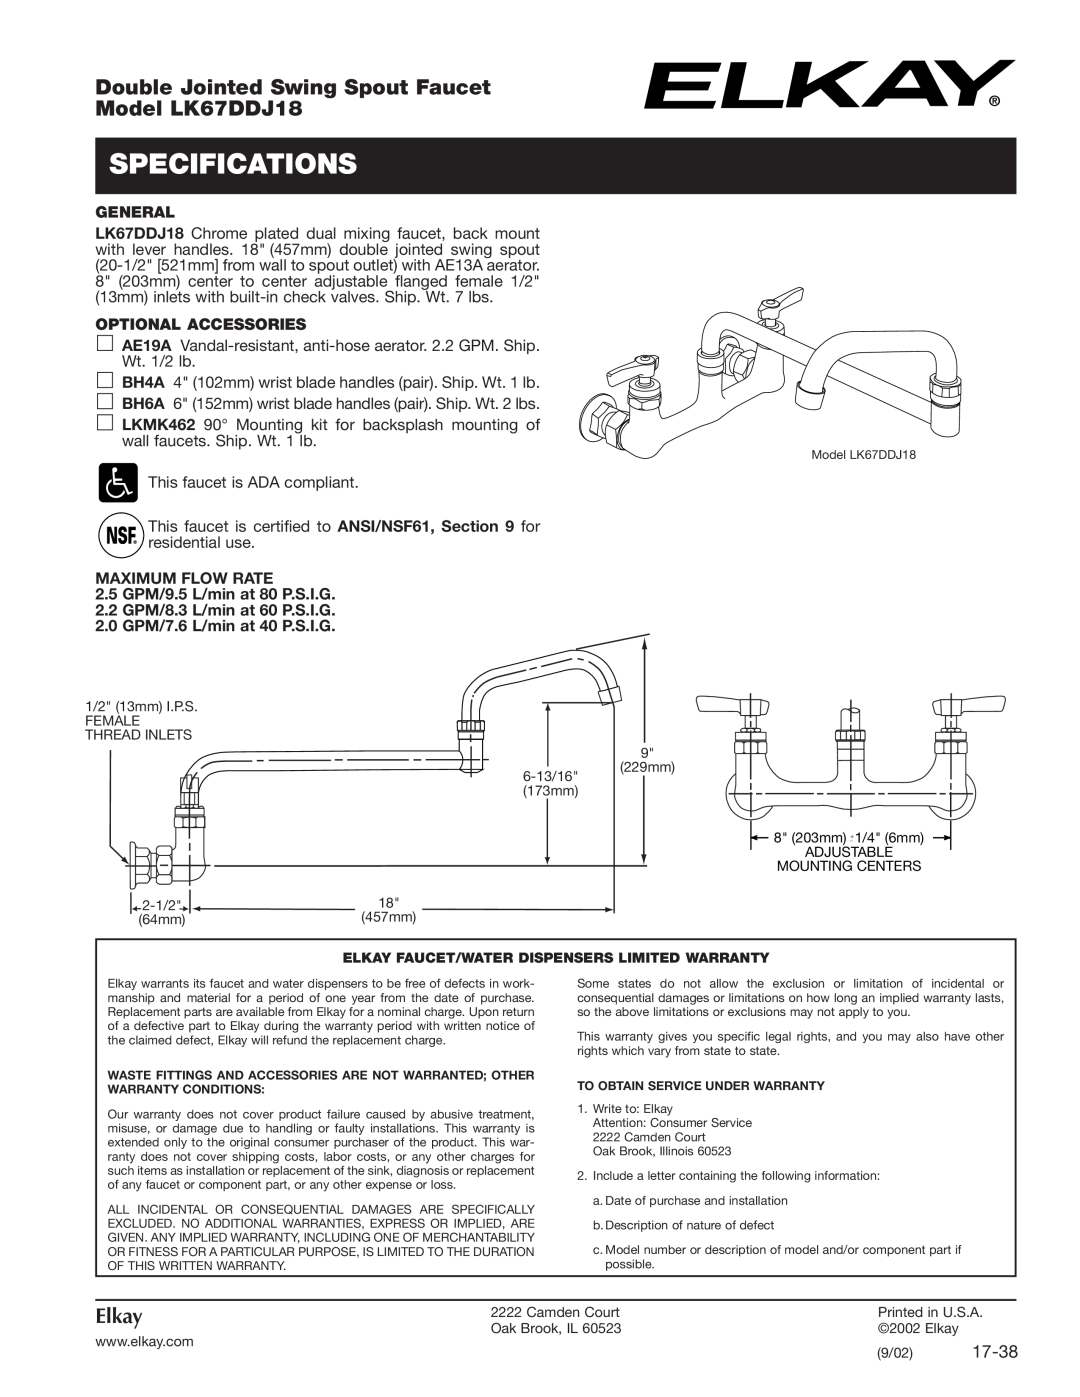 Elkay specifications Specifications, Double Jointed Swing Spout Faucet, Model LK67DDJ18, Elkay, 17-38, General 